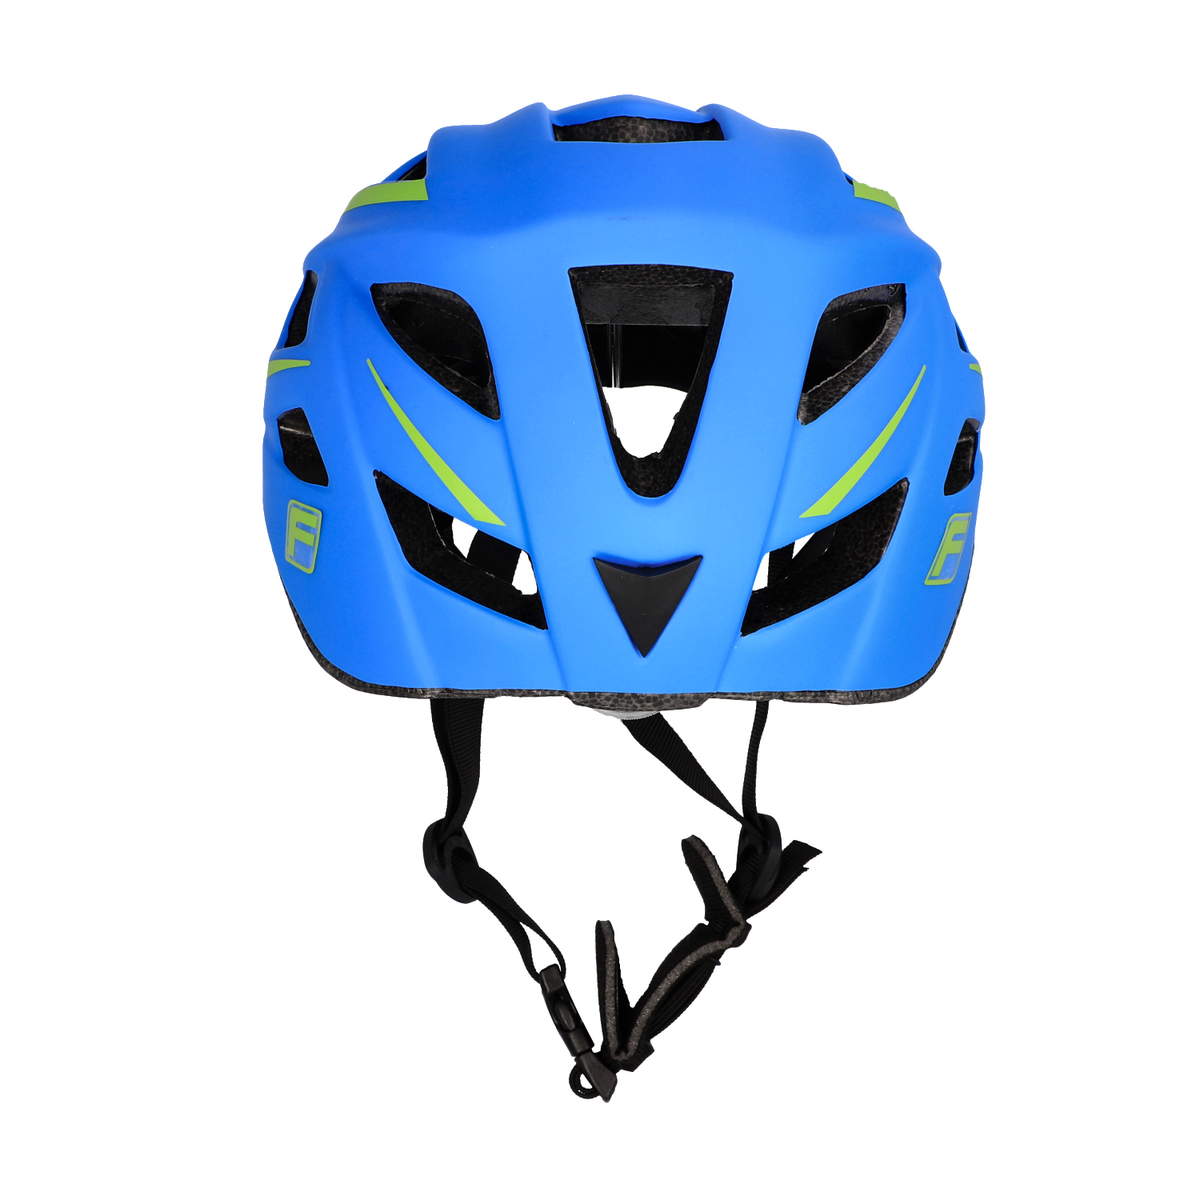 FISCHER Fahrradhelm Urban Montis blau L/XL | Urban Helme | Helme & Zubehör  | Fahrradzubehör | FISCHER Fahrradshop Deutschland EN